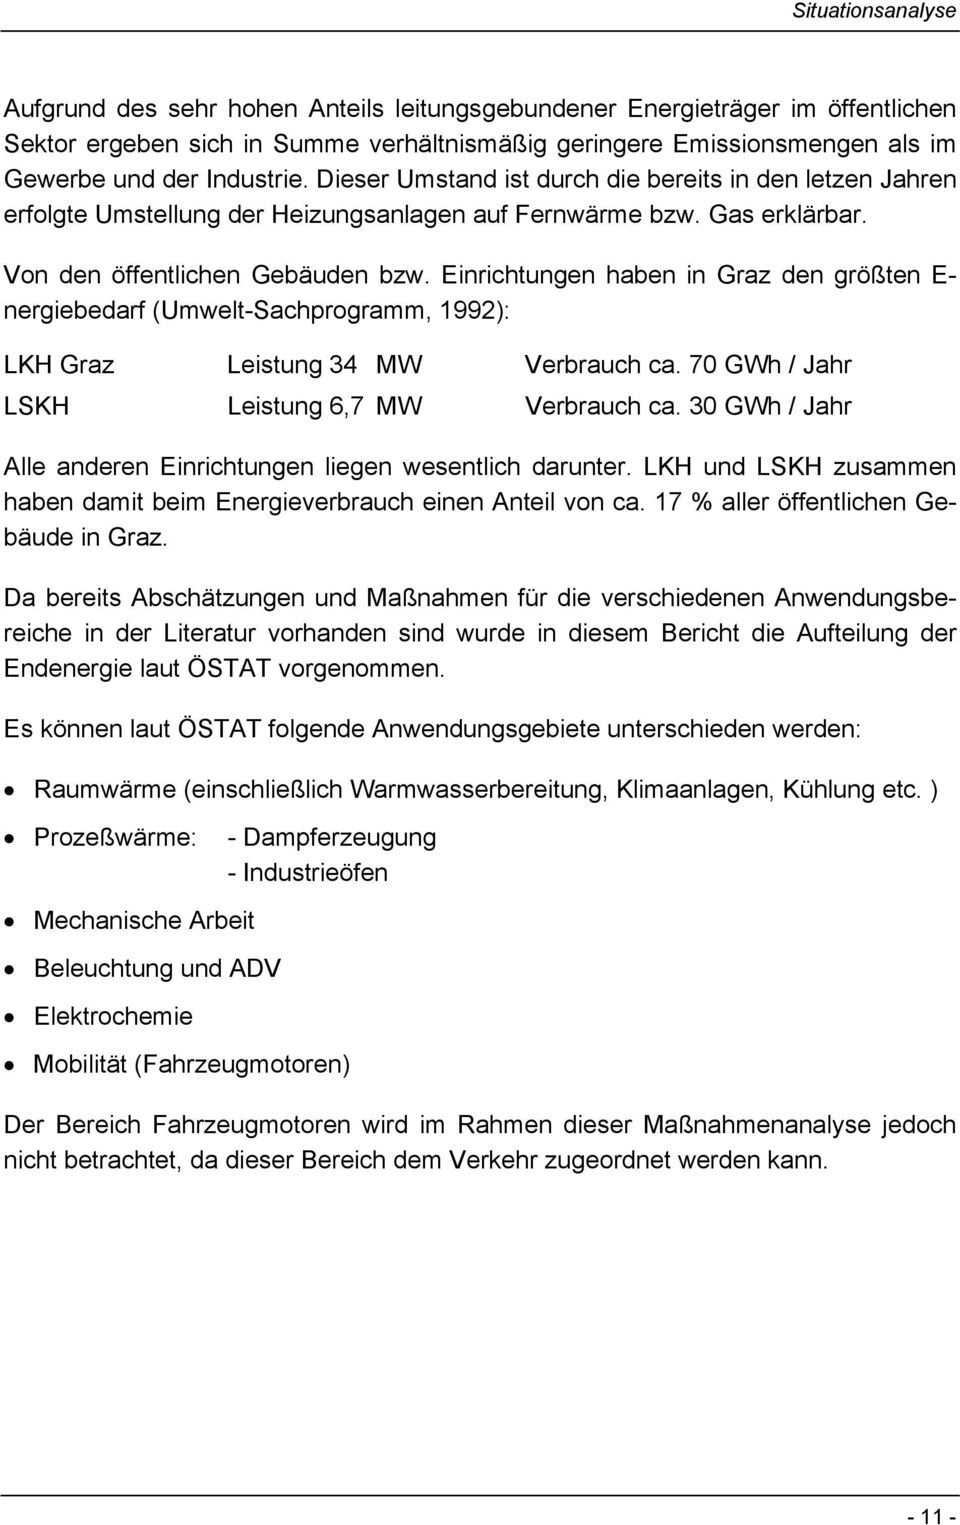 Einrichtungen haben in Graz den größten E- nergiebedarf (Umwelt-Sachprogramm, 1992): LKH Graz Leistung 34 MW Verbrauch ca. 70 GWh / Jahr LSKH Leistung 6,7 MW Verbrauch ca.